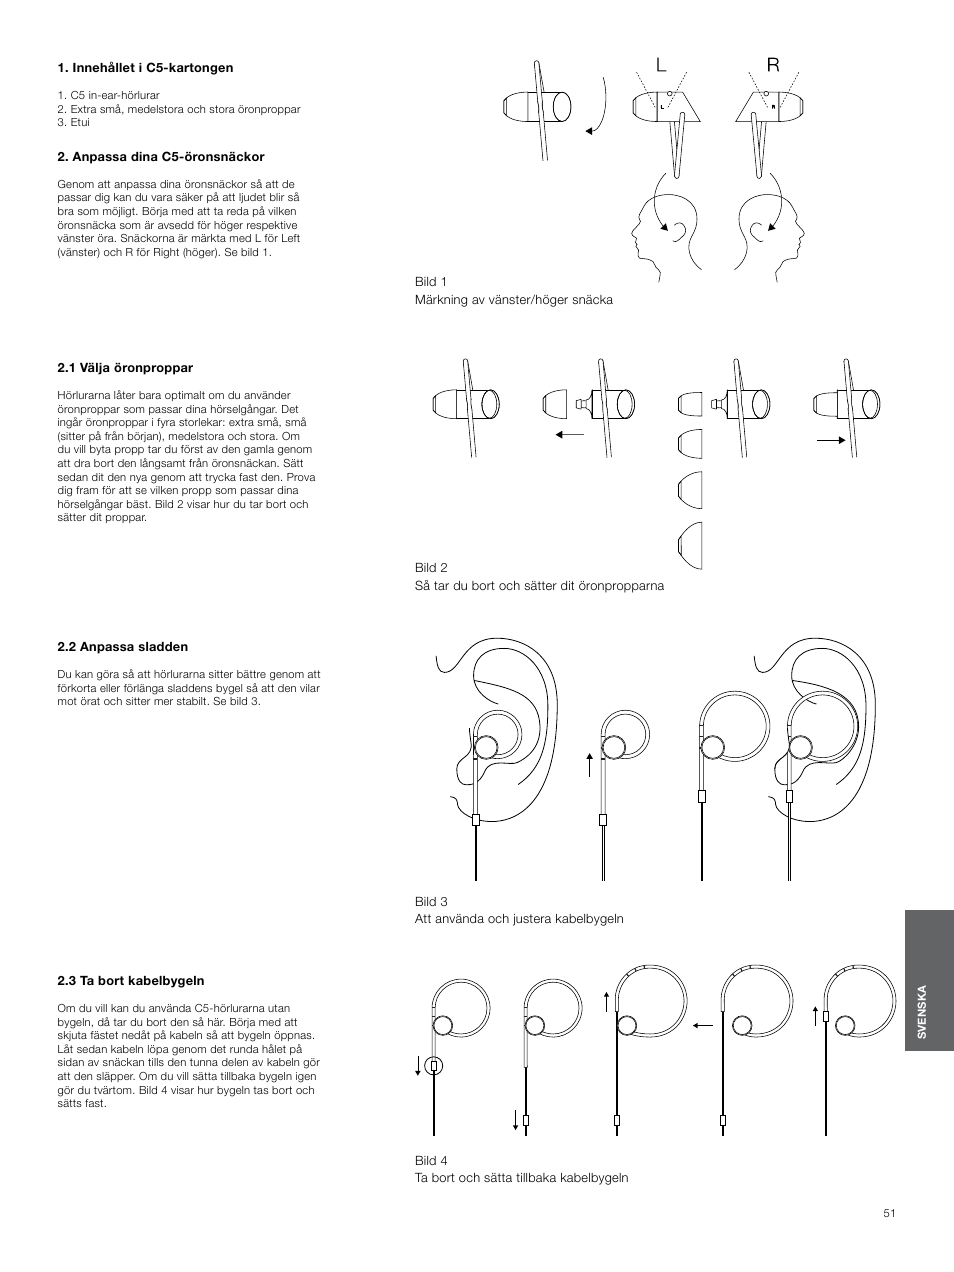 Innehållet i c5-kartongen, Anpassa dina c5-öronsnäckor, 1 välja öronproppar  | Bowers & Wilkins C5 User Manual | Page 51 / 65 | Original mode